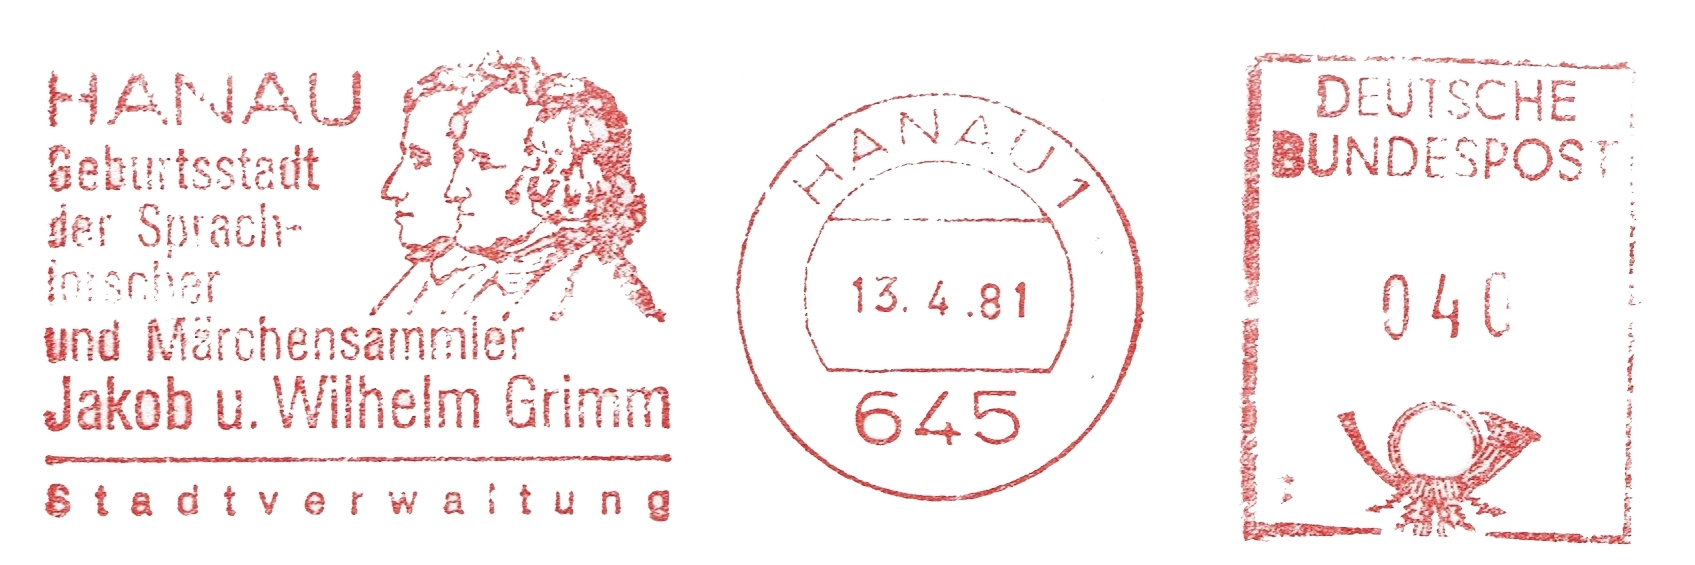 Grimm Hanau 1981